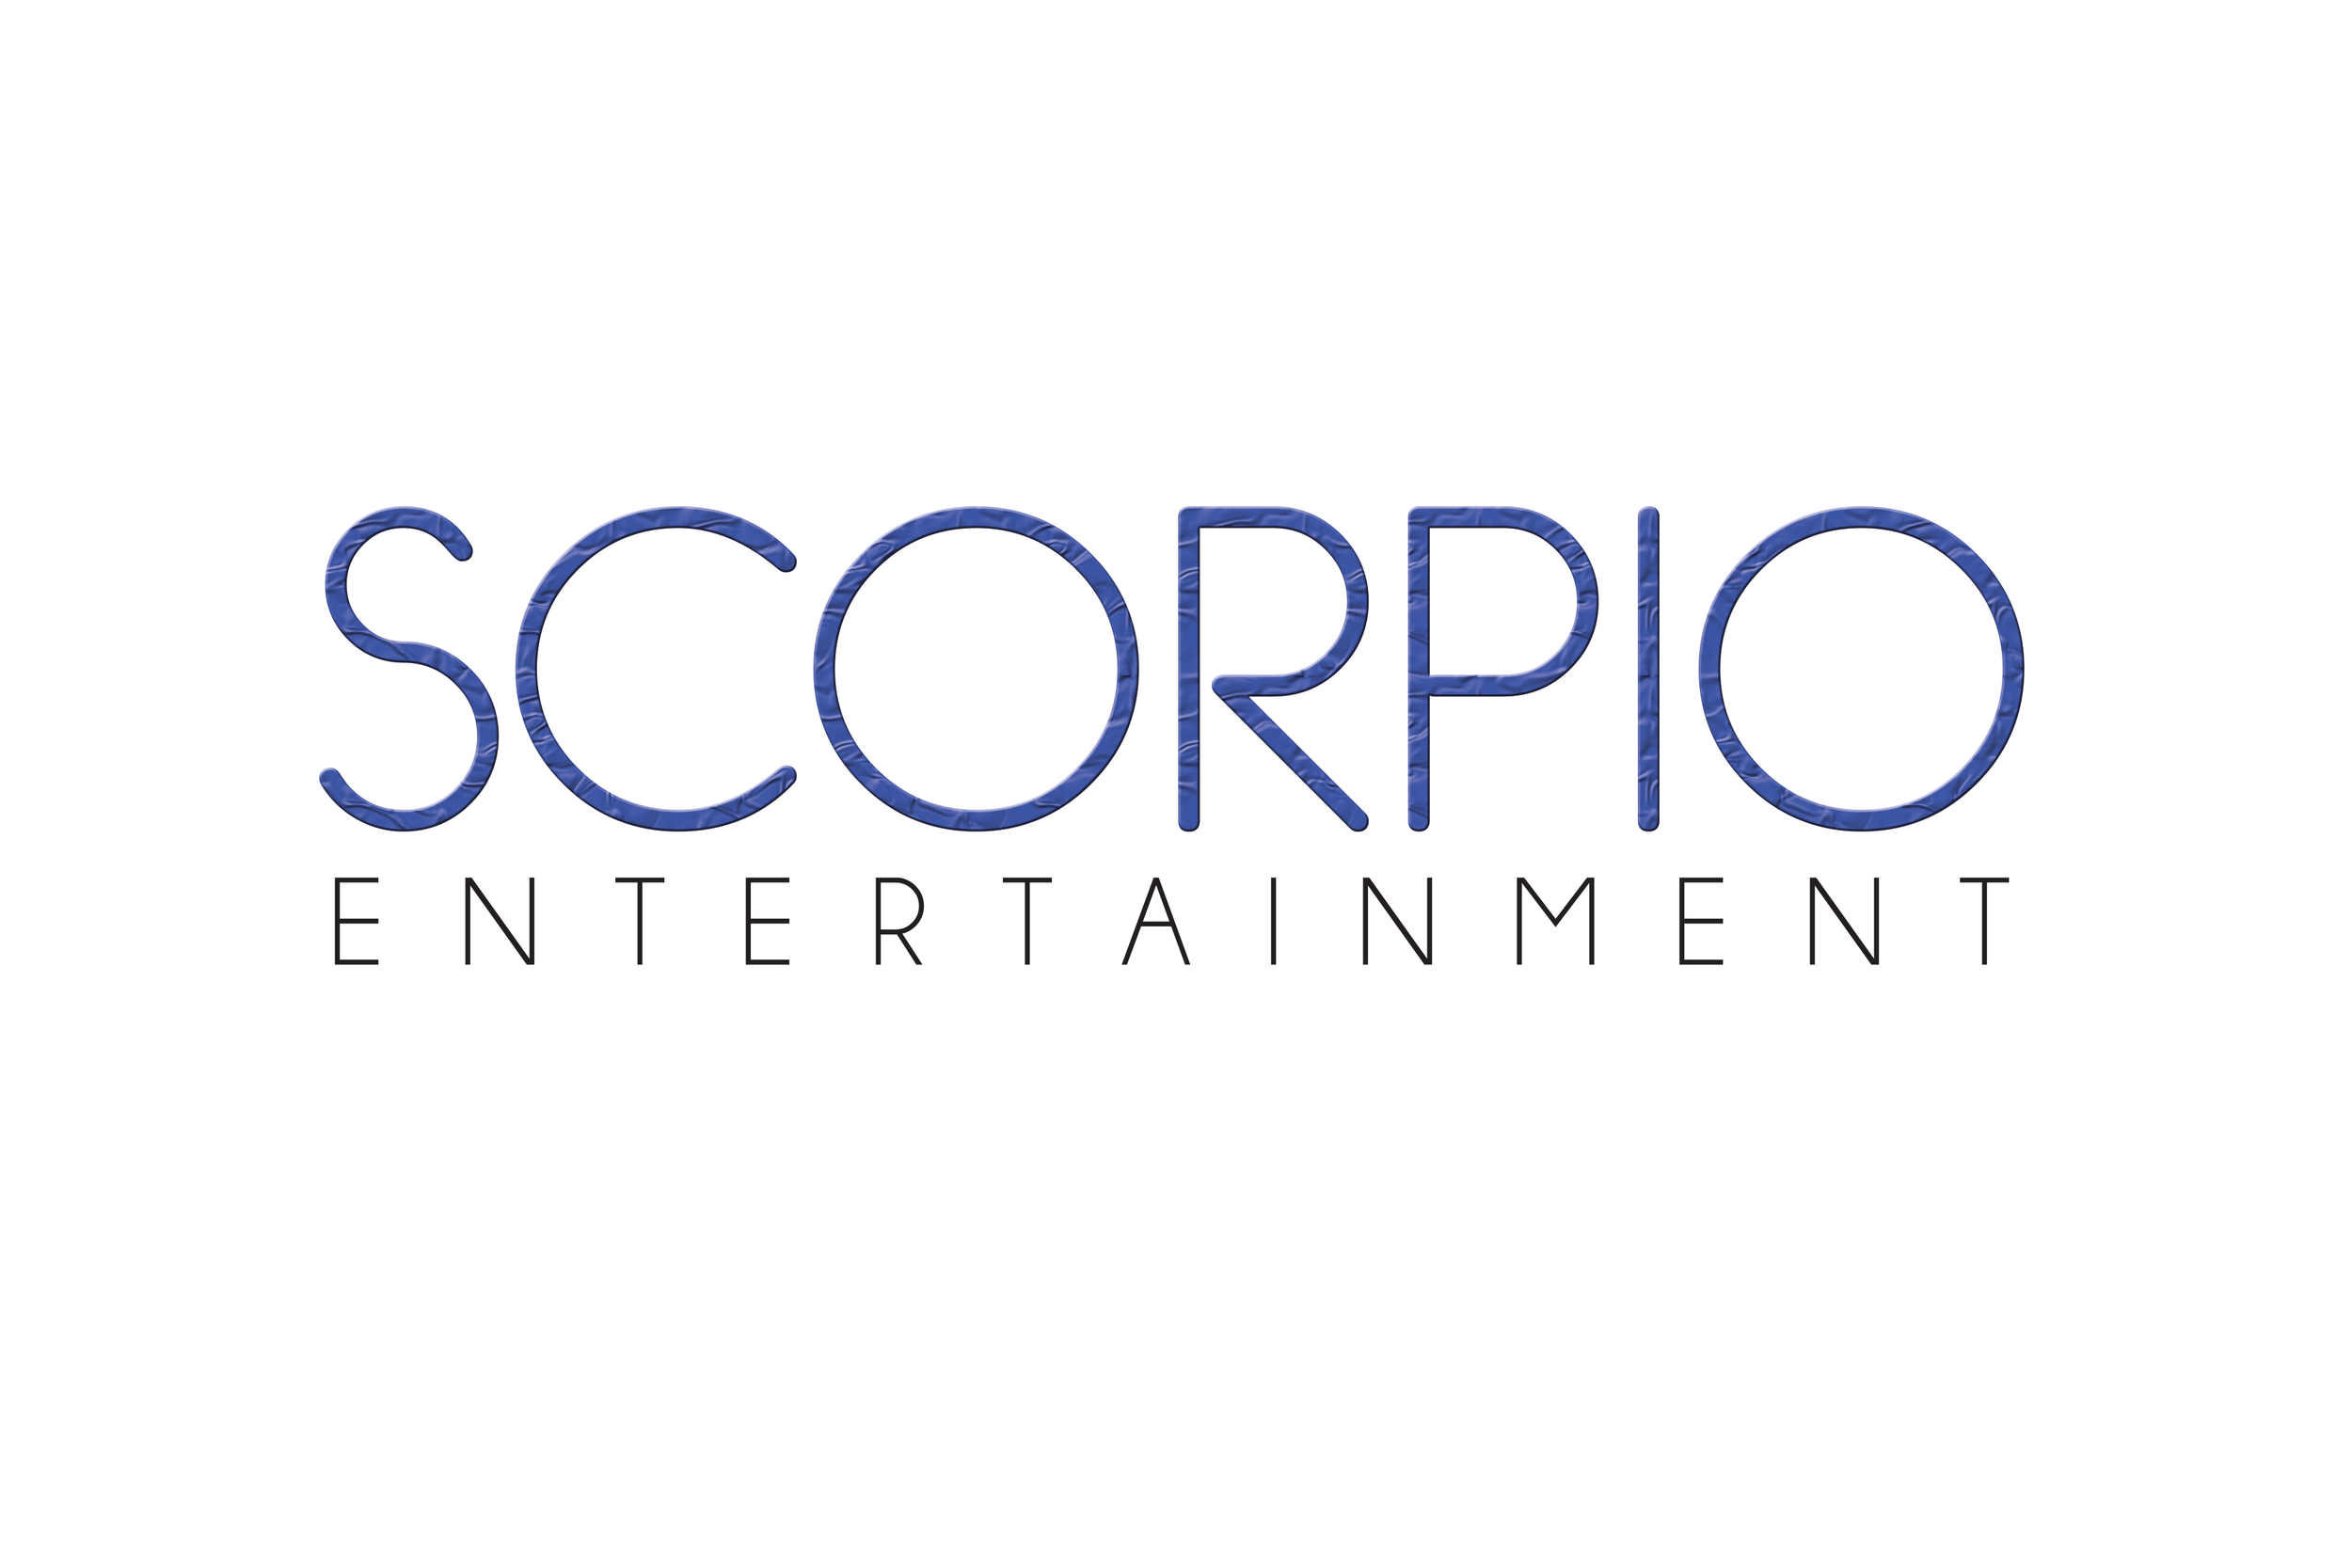 Scorpio Entertainment